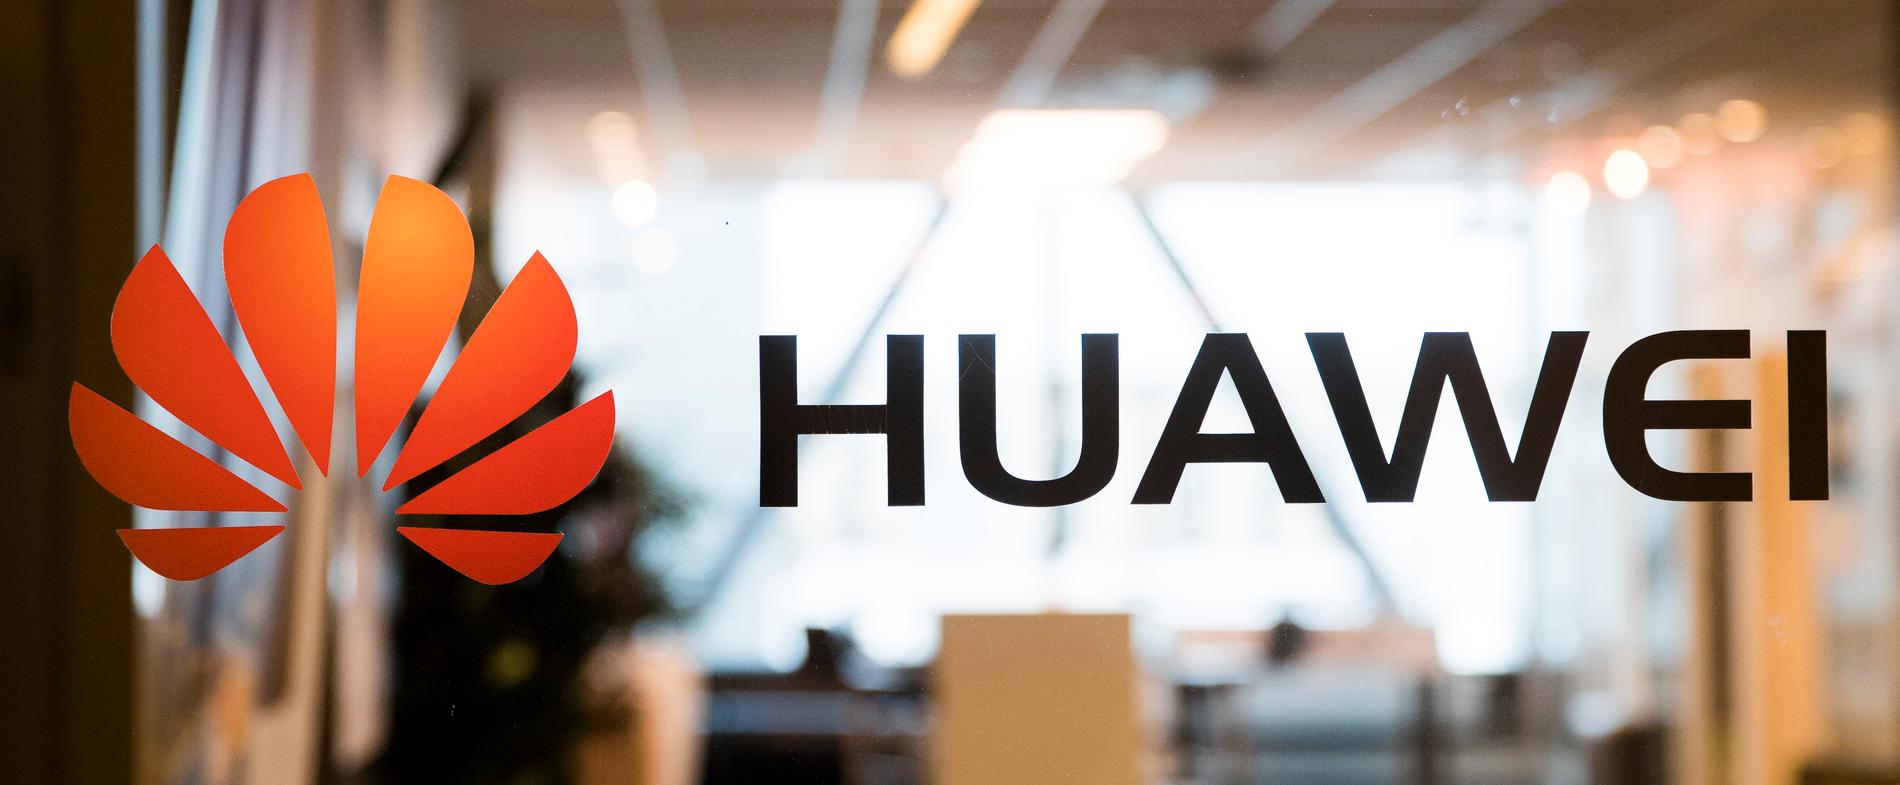 Huawei har slipat på argumenten. Arkivbild.